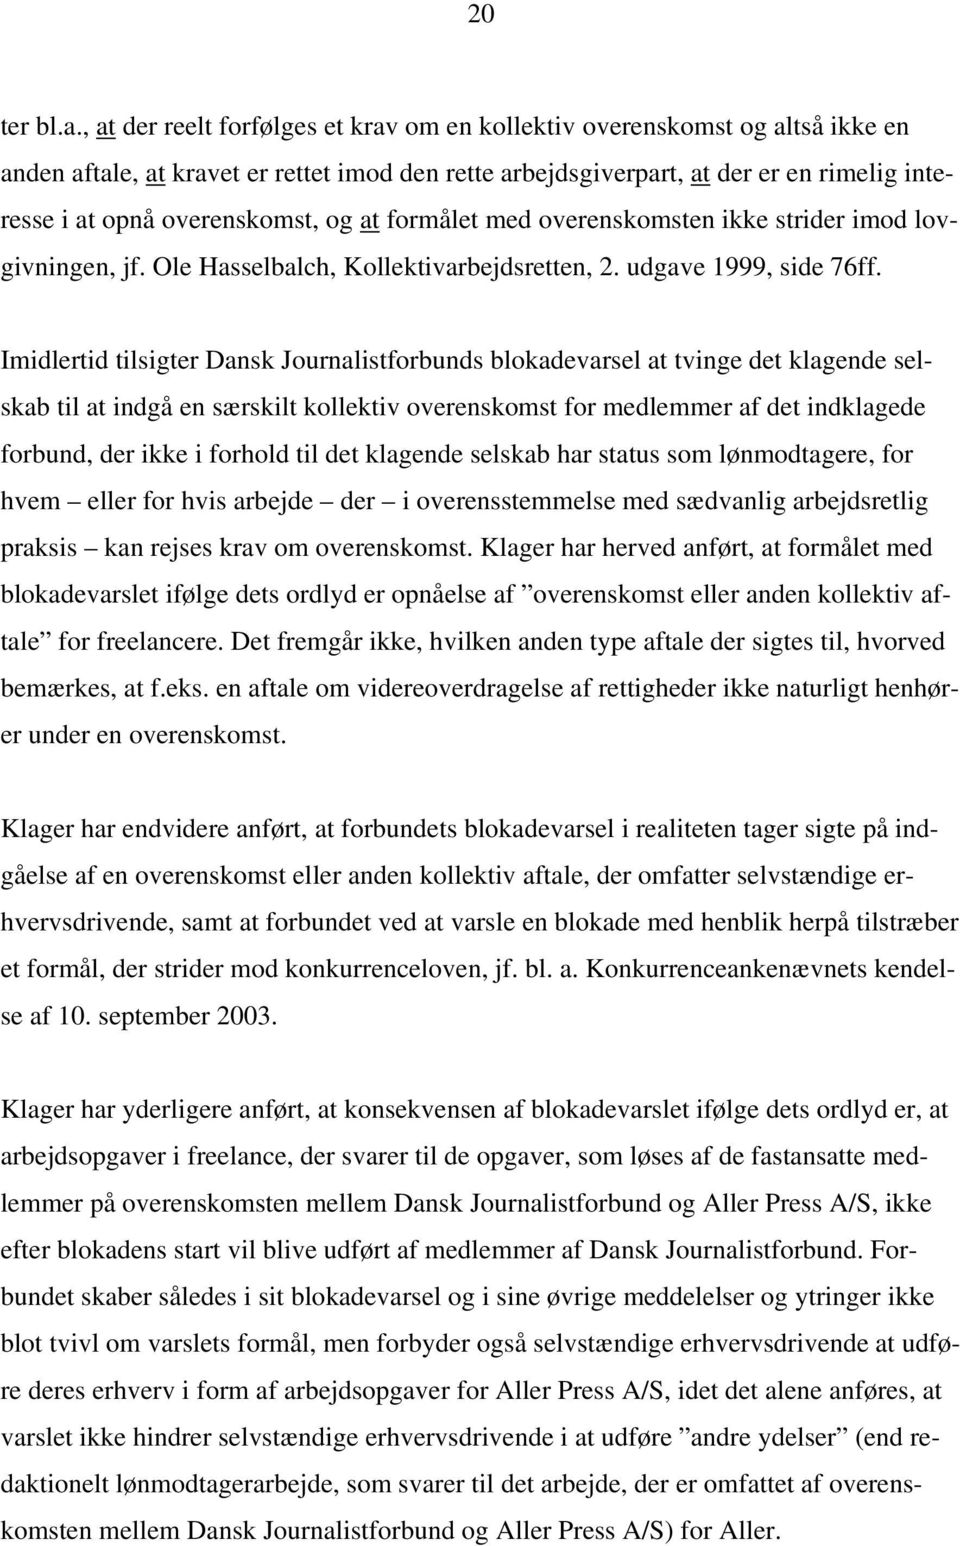 overenskomst, og at formålet med overenskomsten ikke strider imod lovgivningen, jf. Ole Hasselbalch, Kollektivarbejdsretten, 2. udgave 1999, side 76ff.